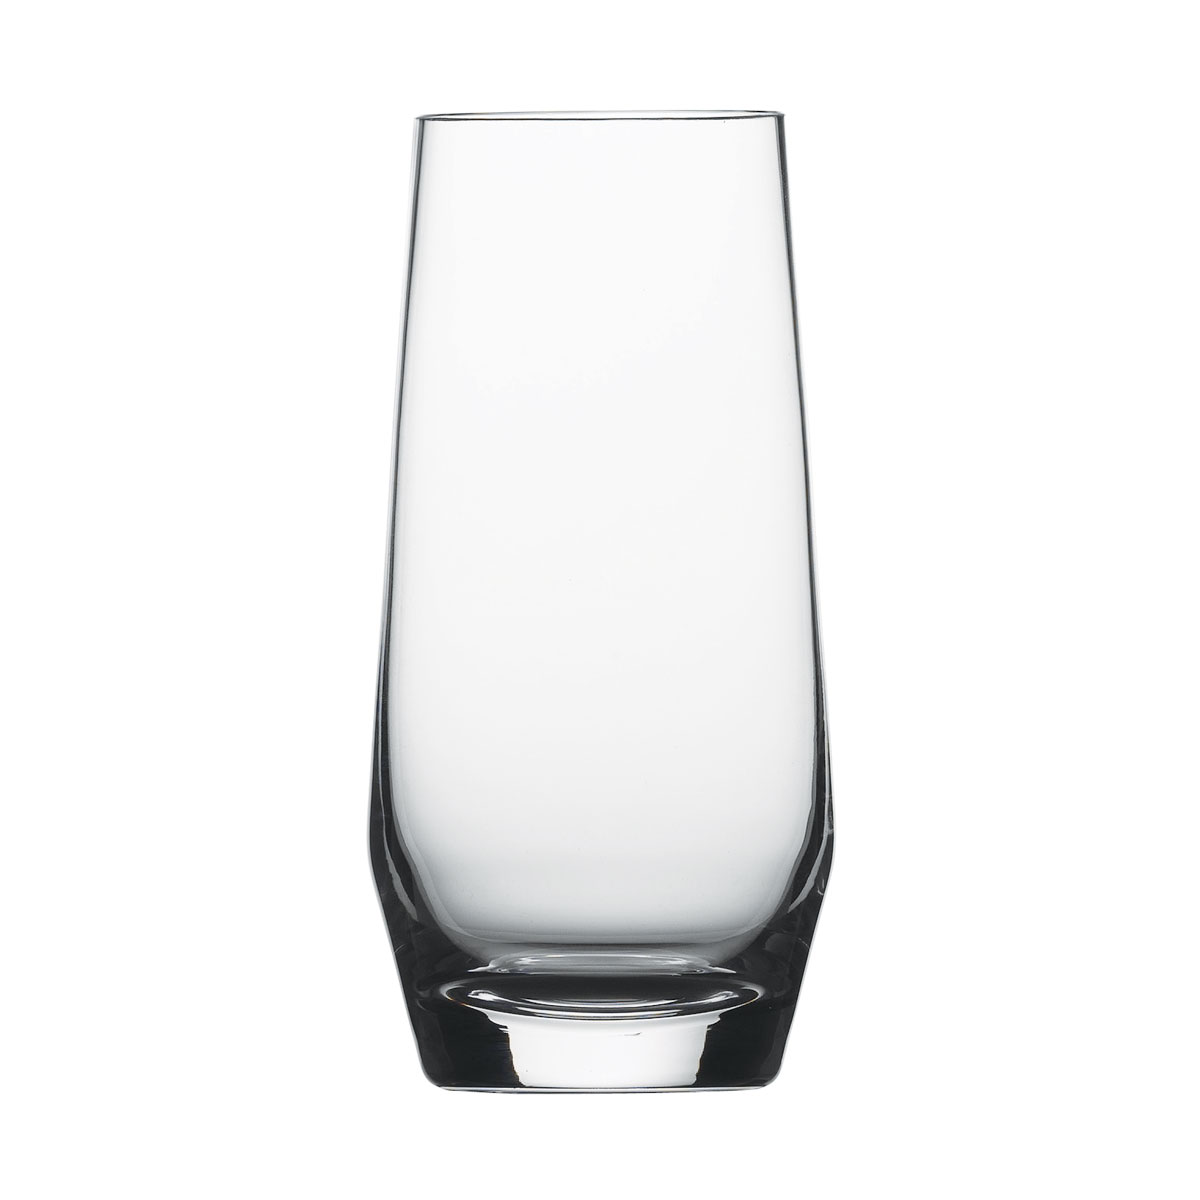 Schott Zwiesel Tritan Crystal, Pure Tumbler Water Glass, Single